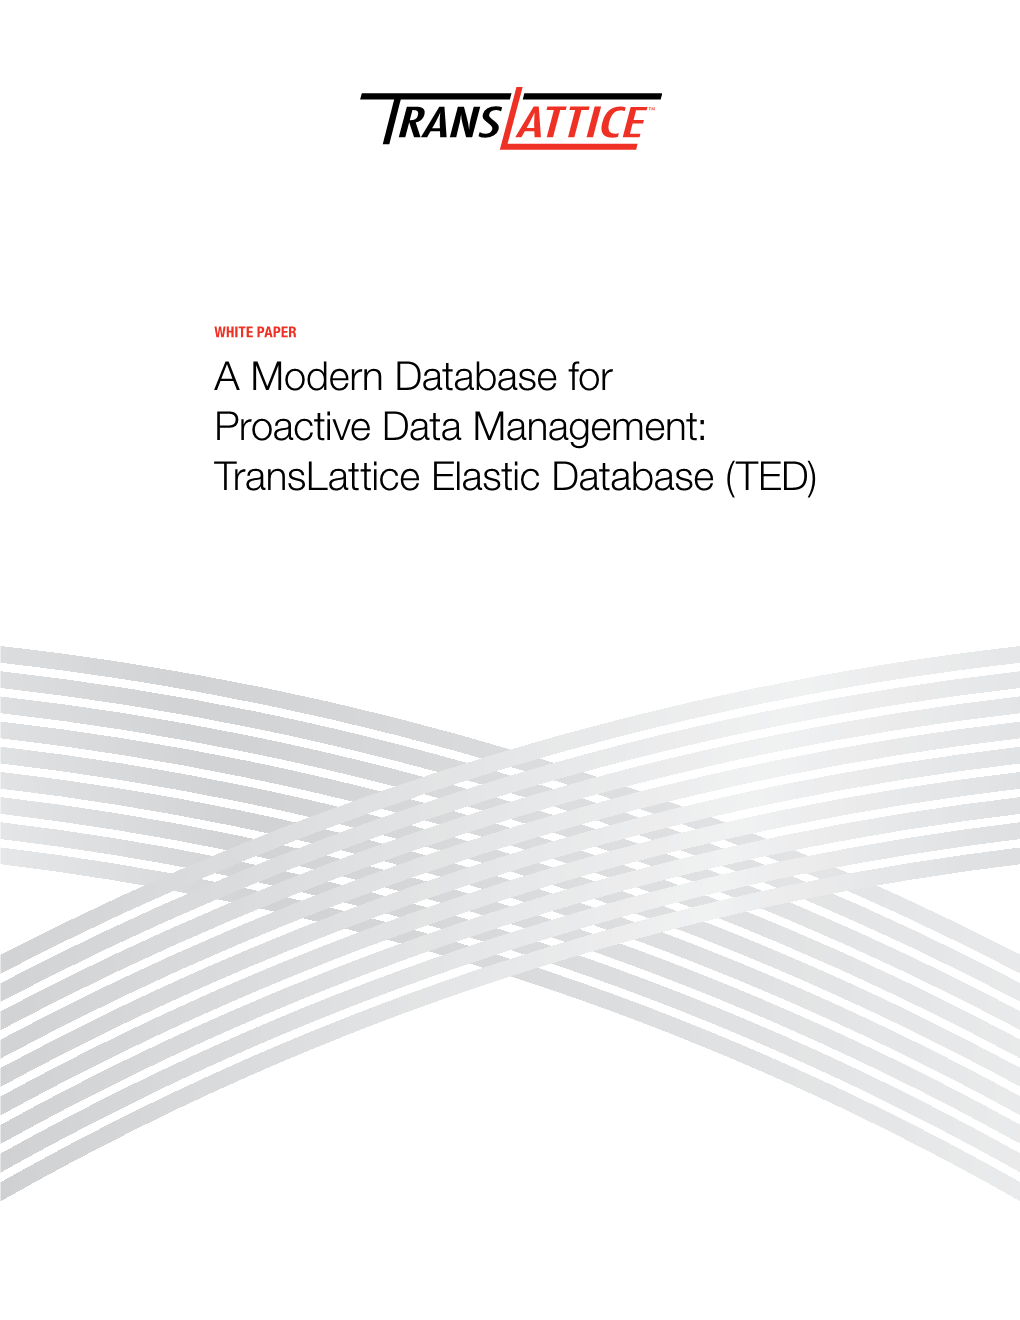 Translattice Elastic Database (TED) a Modern Database for Proactive Data Management: Translattice Elastic Database (TED) White Paper